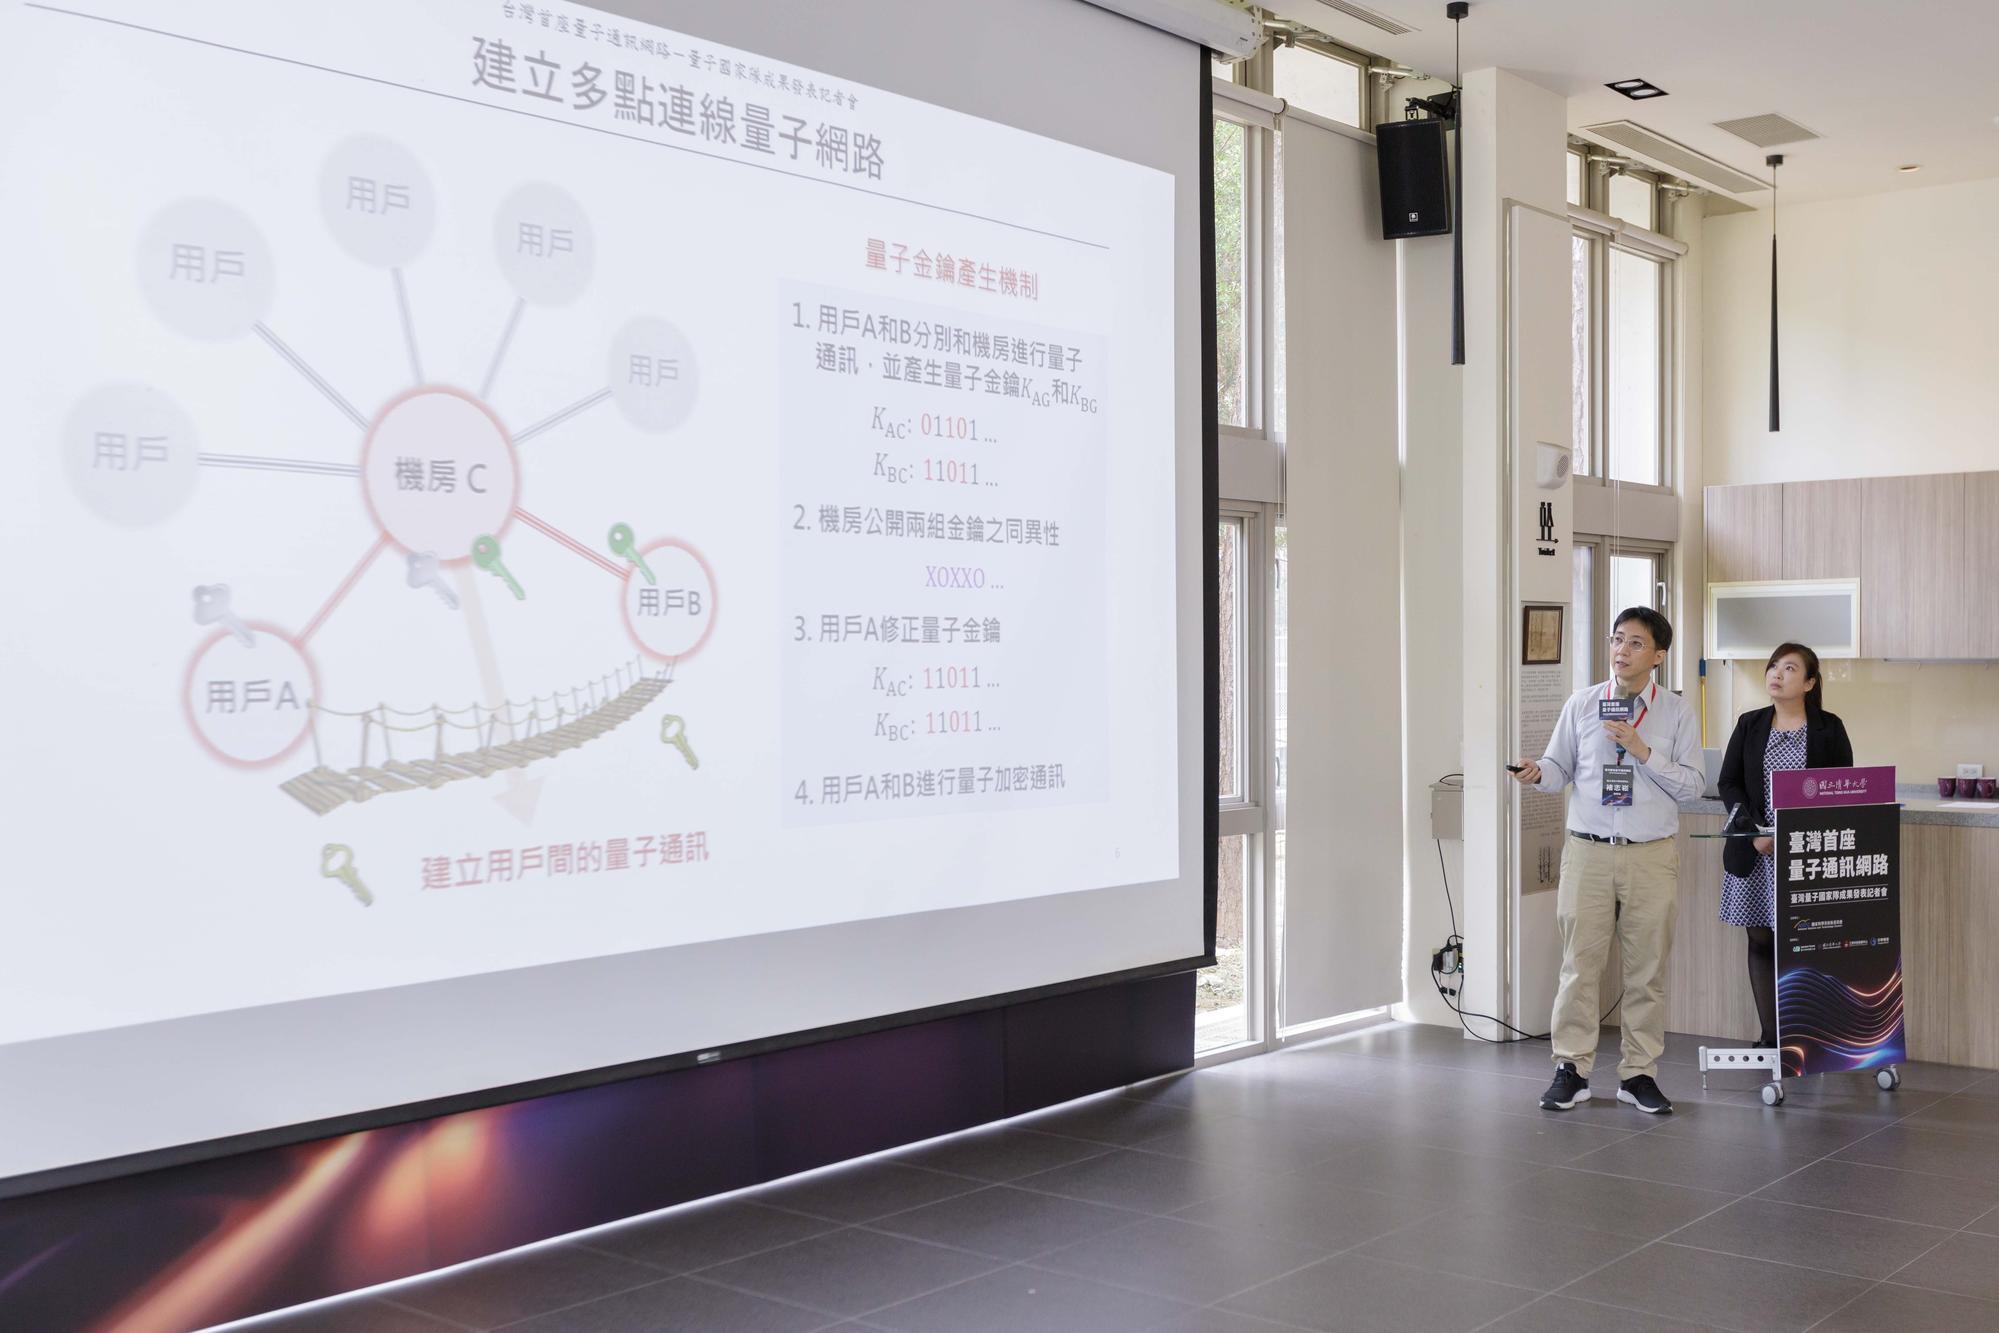 本校物理系褚志崧副教授說明量子通訊網路的加密方式。
A.P. Chih-sung Chuu (褚志崧) explaining the quantum secure communication network.